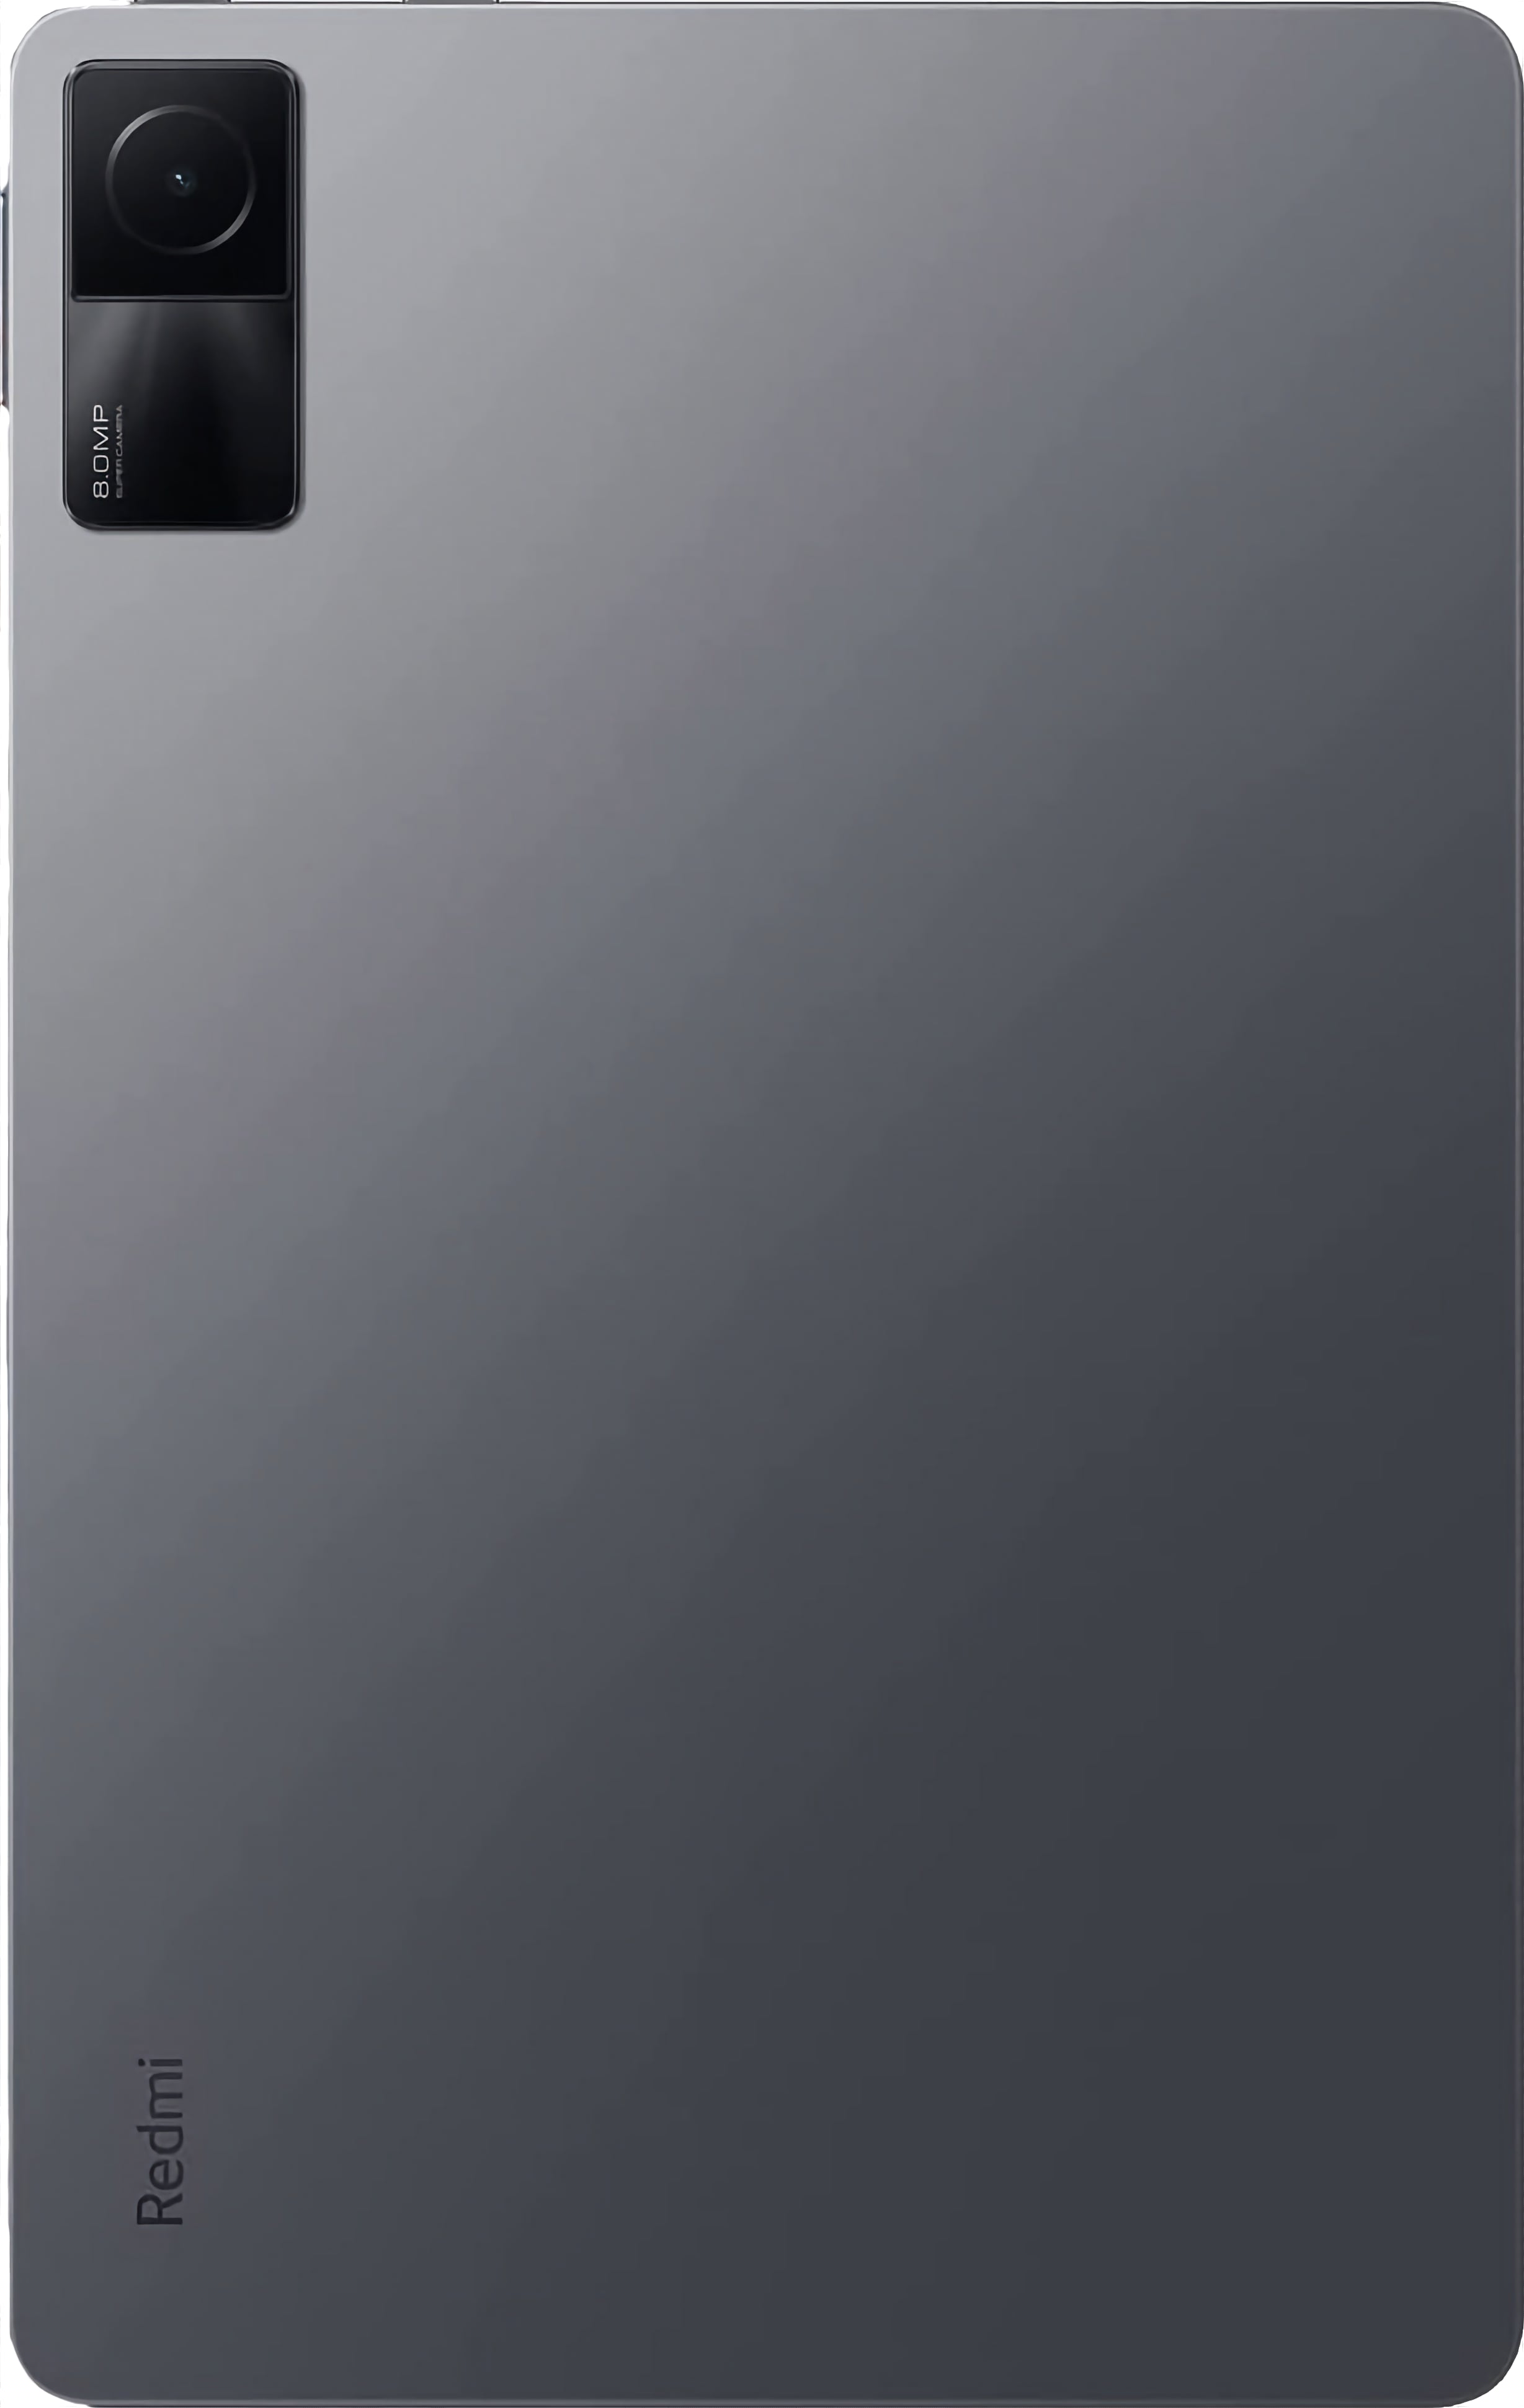 Análisis de la Xiaomi Redmi Pad: tableta asequible Android con 90